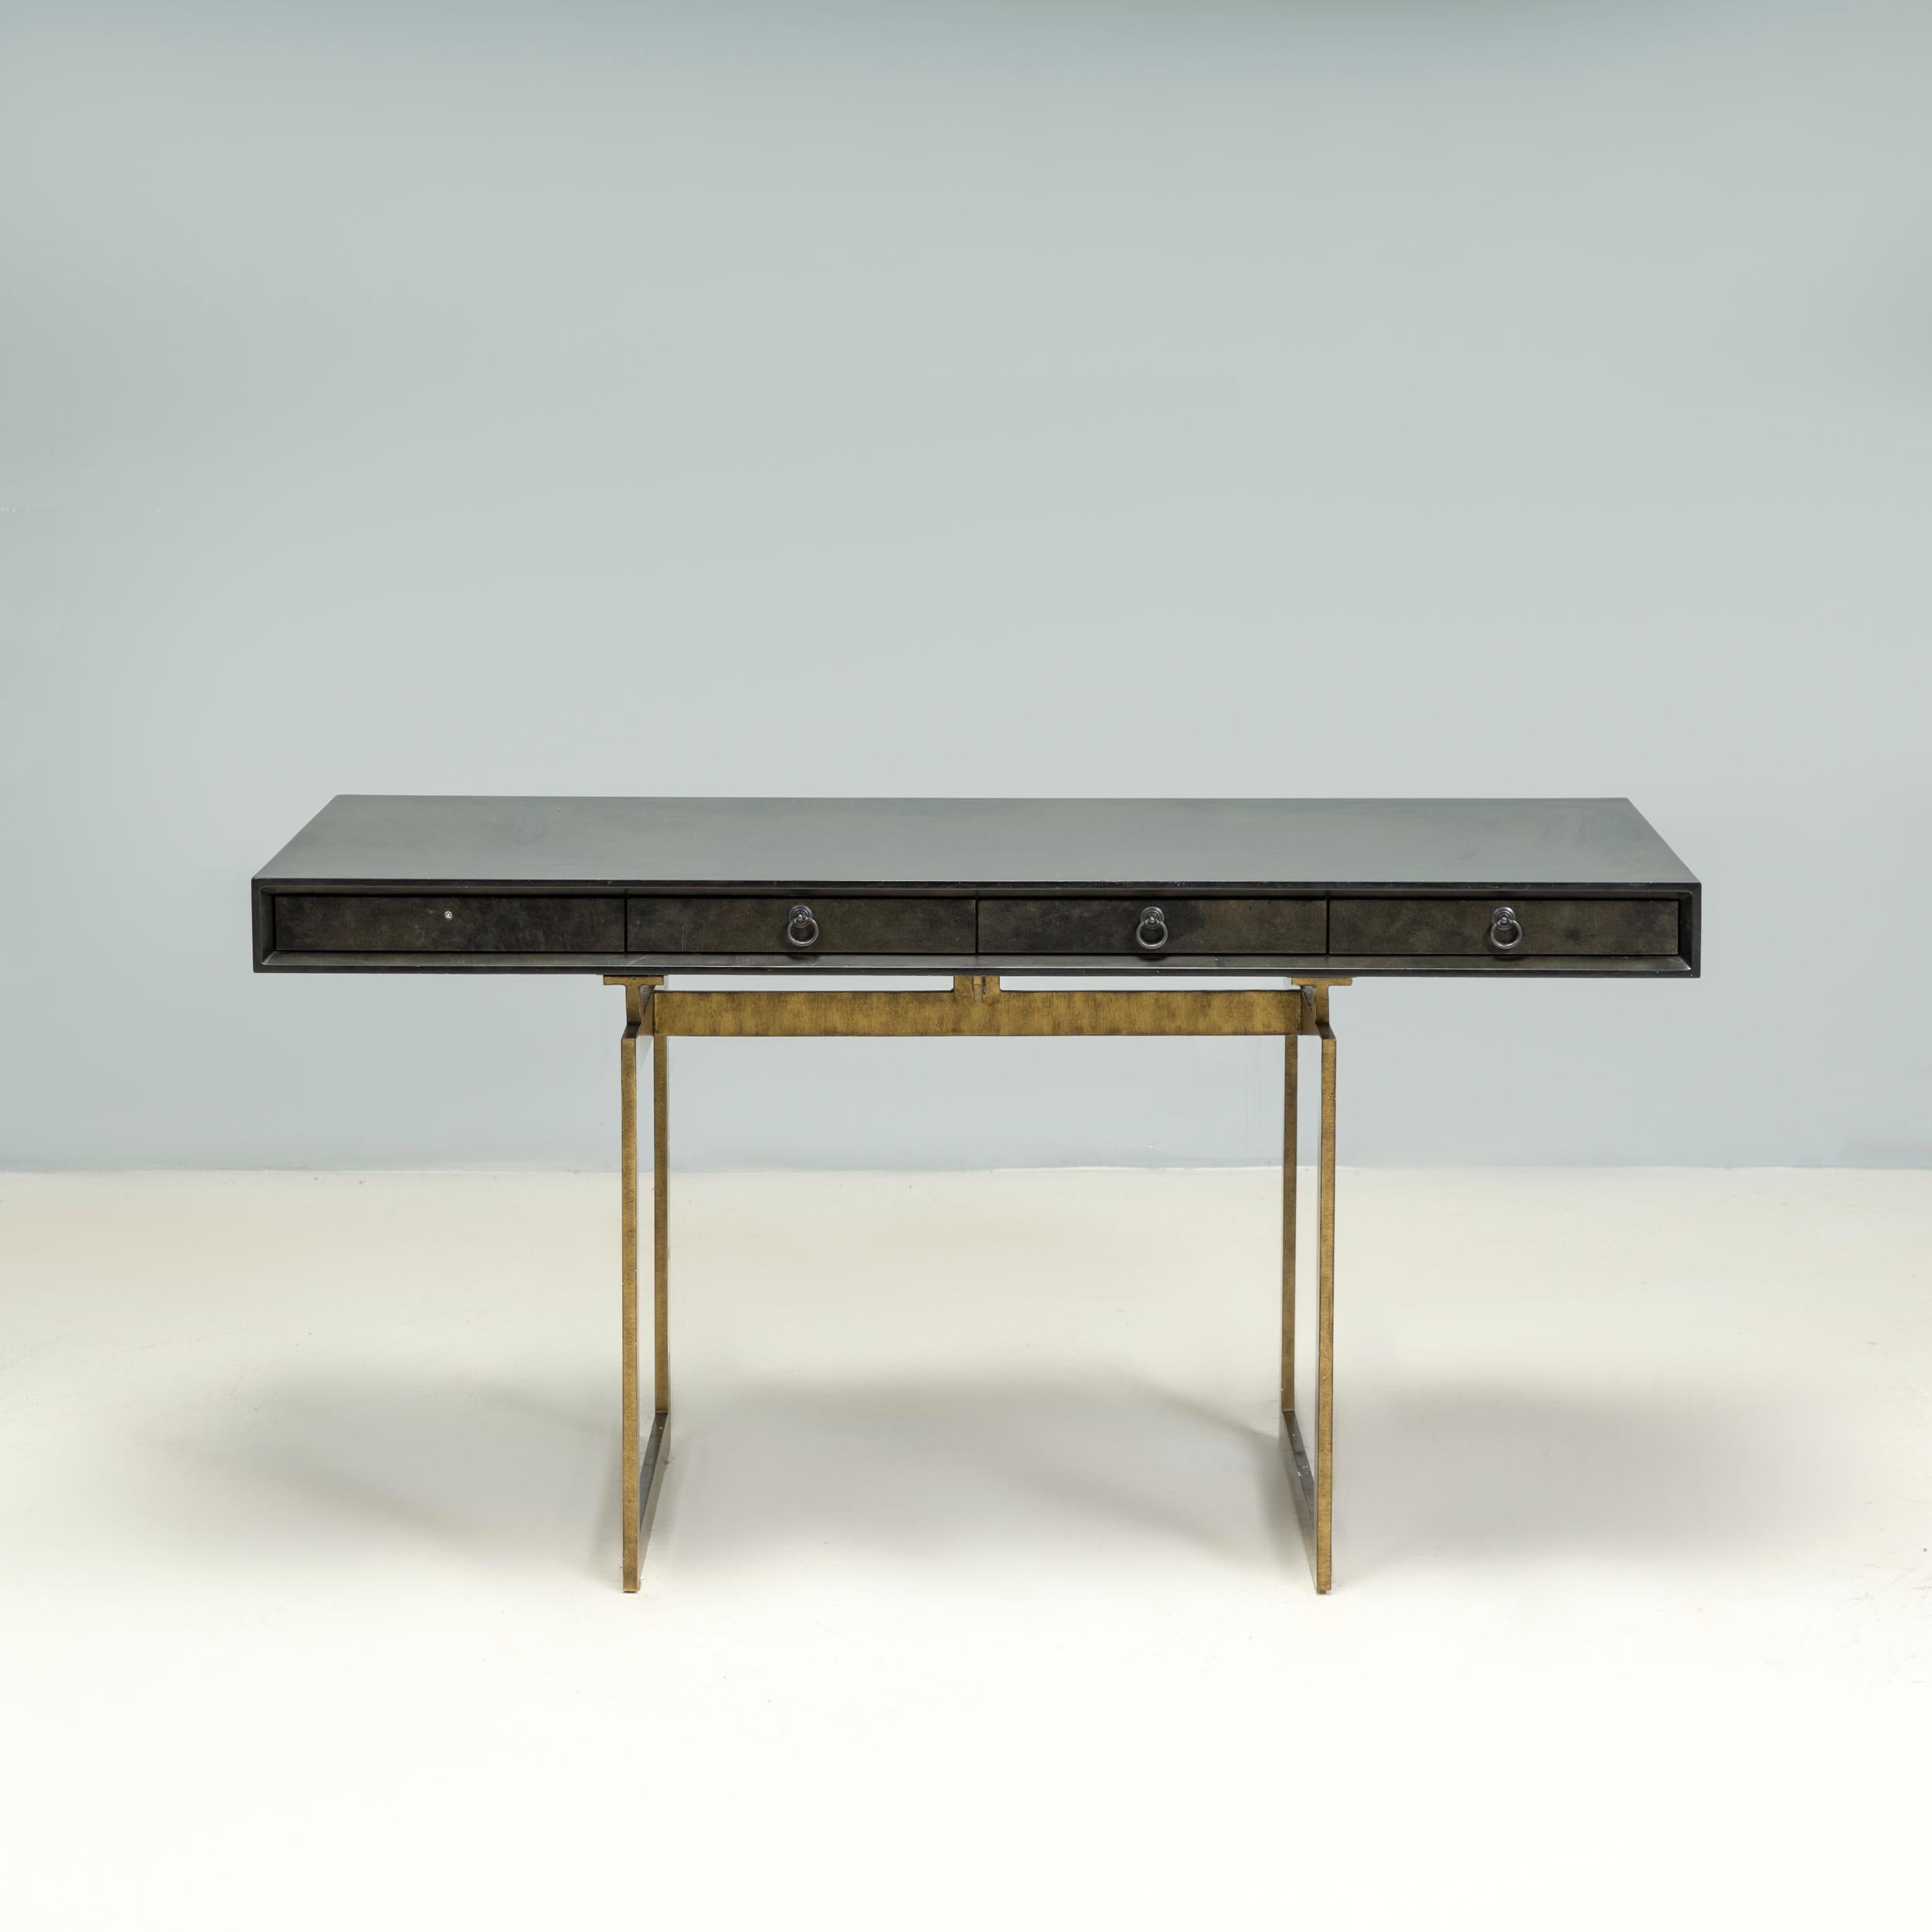 Julian Chichester gründete 1995 seine Möbeldesignfirma, die sich von den klassischen Formen des 19. und 20. Jahrhunderts inspirieren ließ und ihnen durch zeitgenössische Oberflächen und Details eine eigene Note verlieh.

Der Schreibtisch Cortes ist